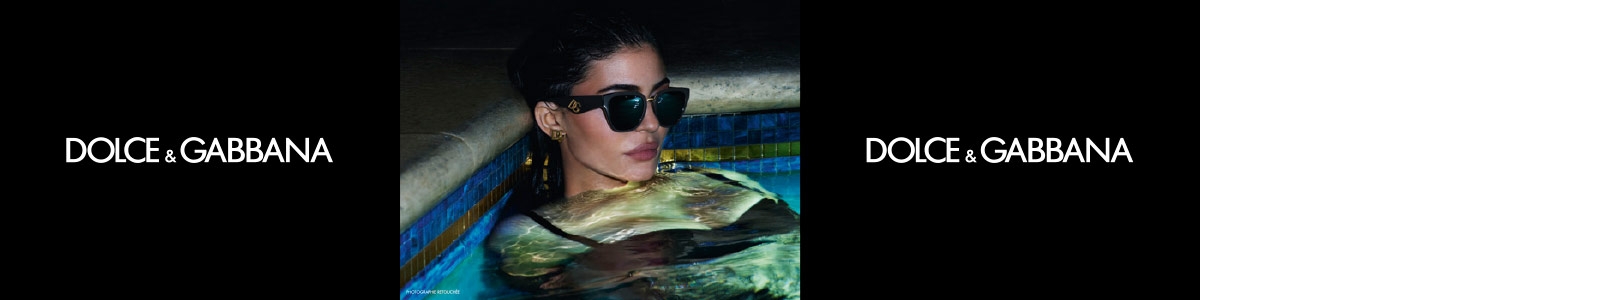 Image d'une femme et d'un homme avec des lunettes de soleil de la marque Dolce Gabbana